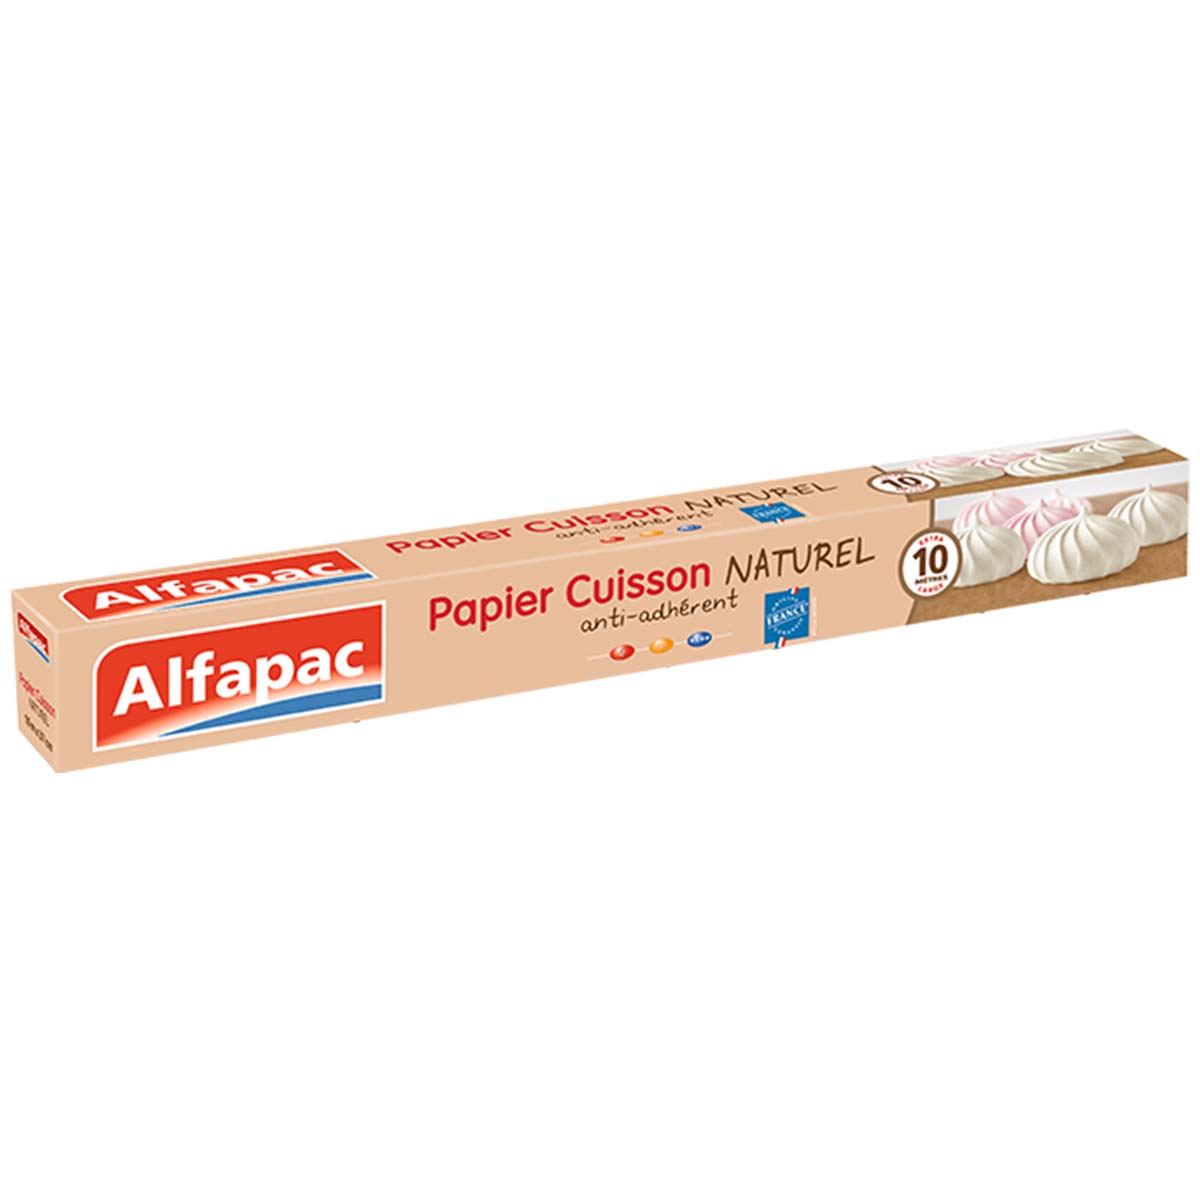 Papier cuisson naturel Alfapac 10 mètres – LE&LA MARKET